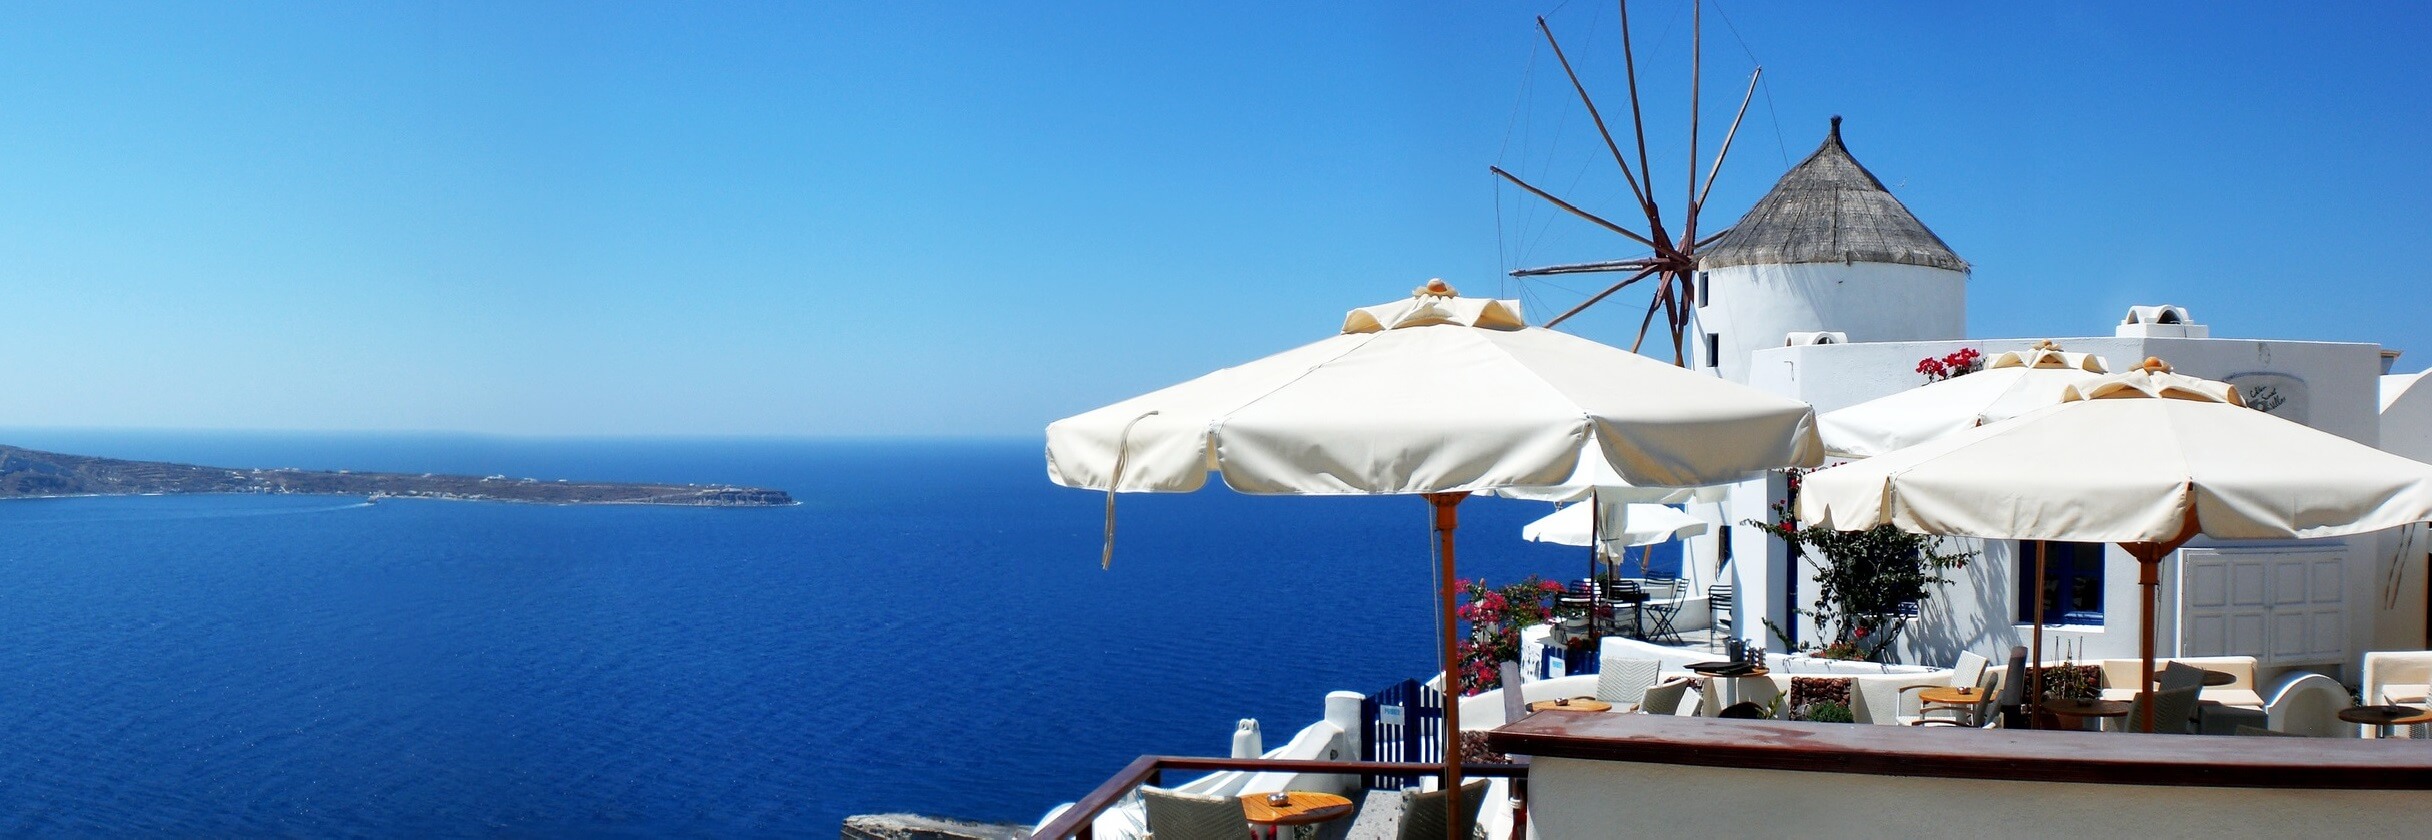 Die 10 Besten Griechische Inseln Rundreisen für Singles / Alleinreisende - TourRadar